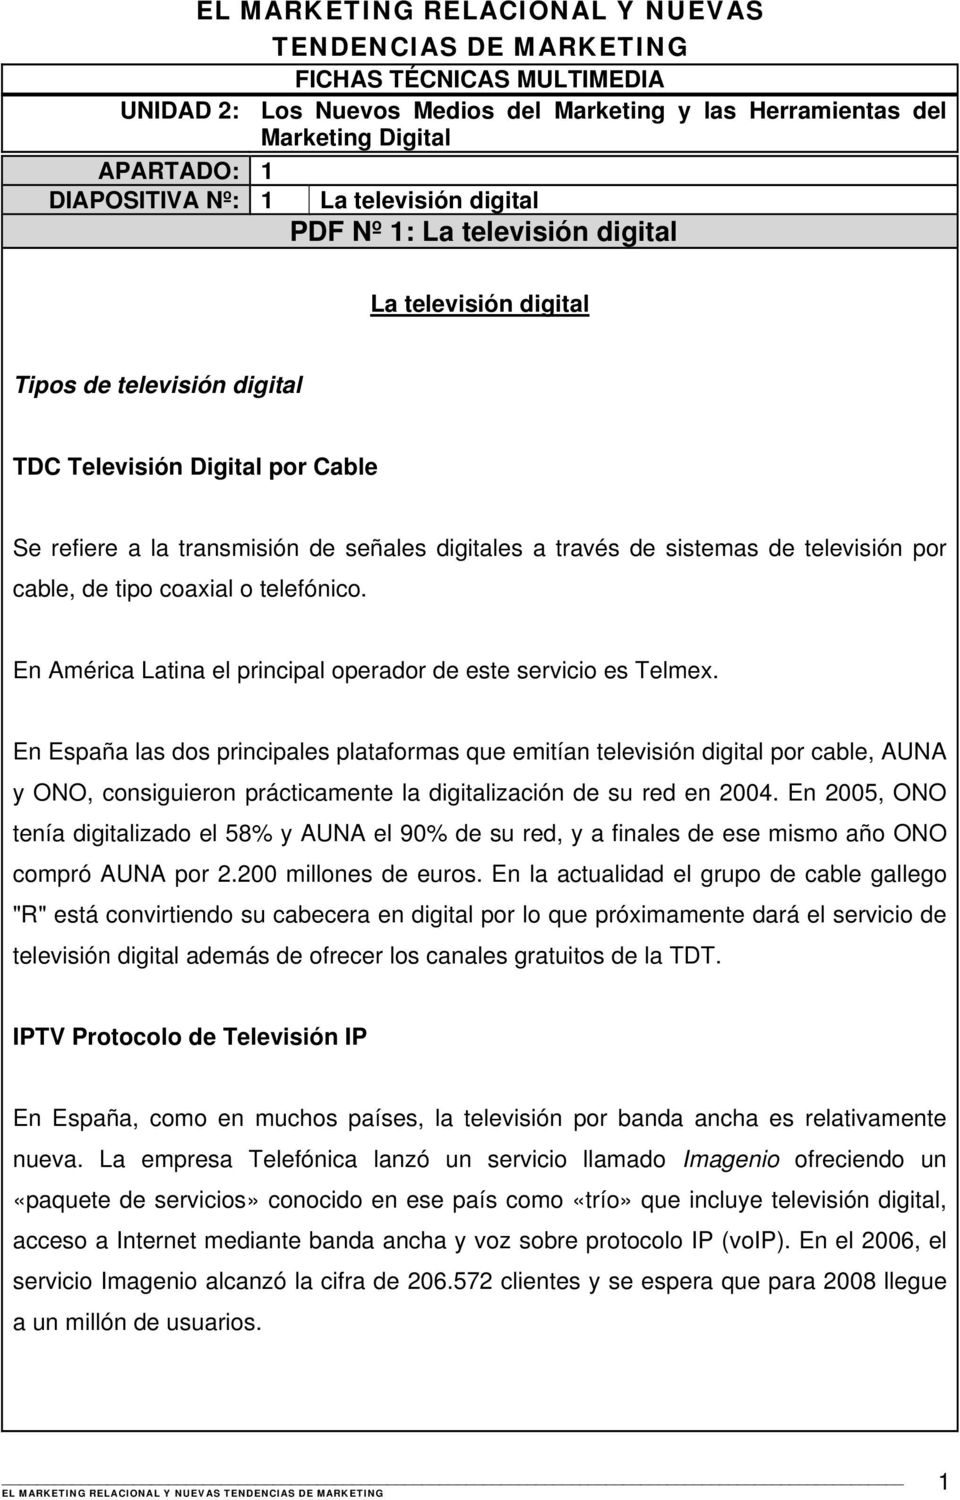 En España las dos principales plataformas que emitían televisión digital por cable, AUNA y ONO, consiguieron prácticamente la digitalización de su red en 2004.